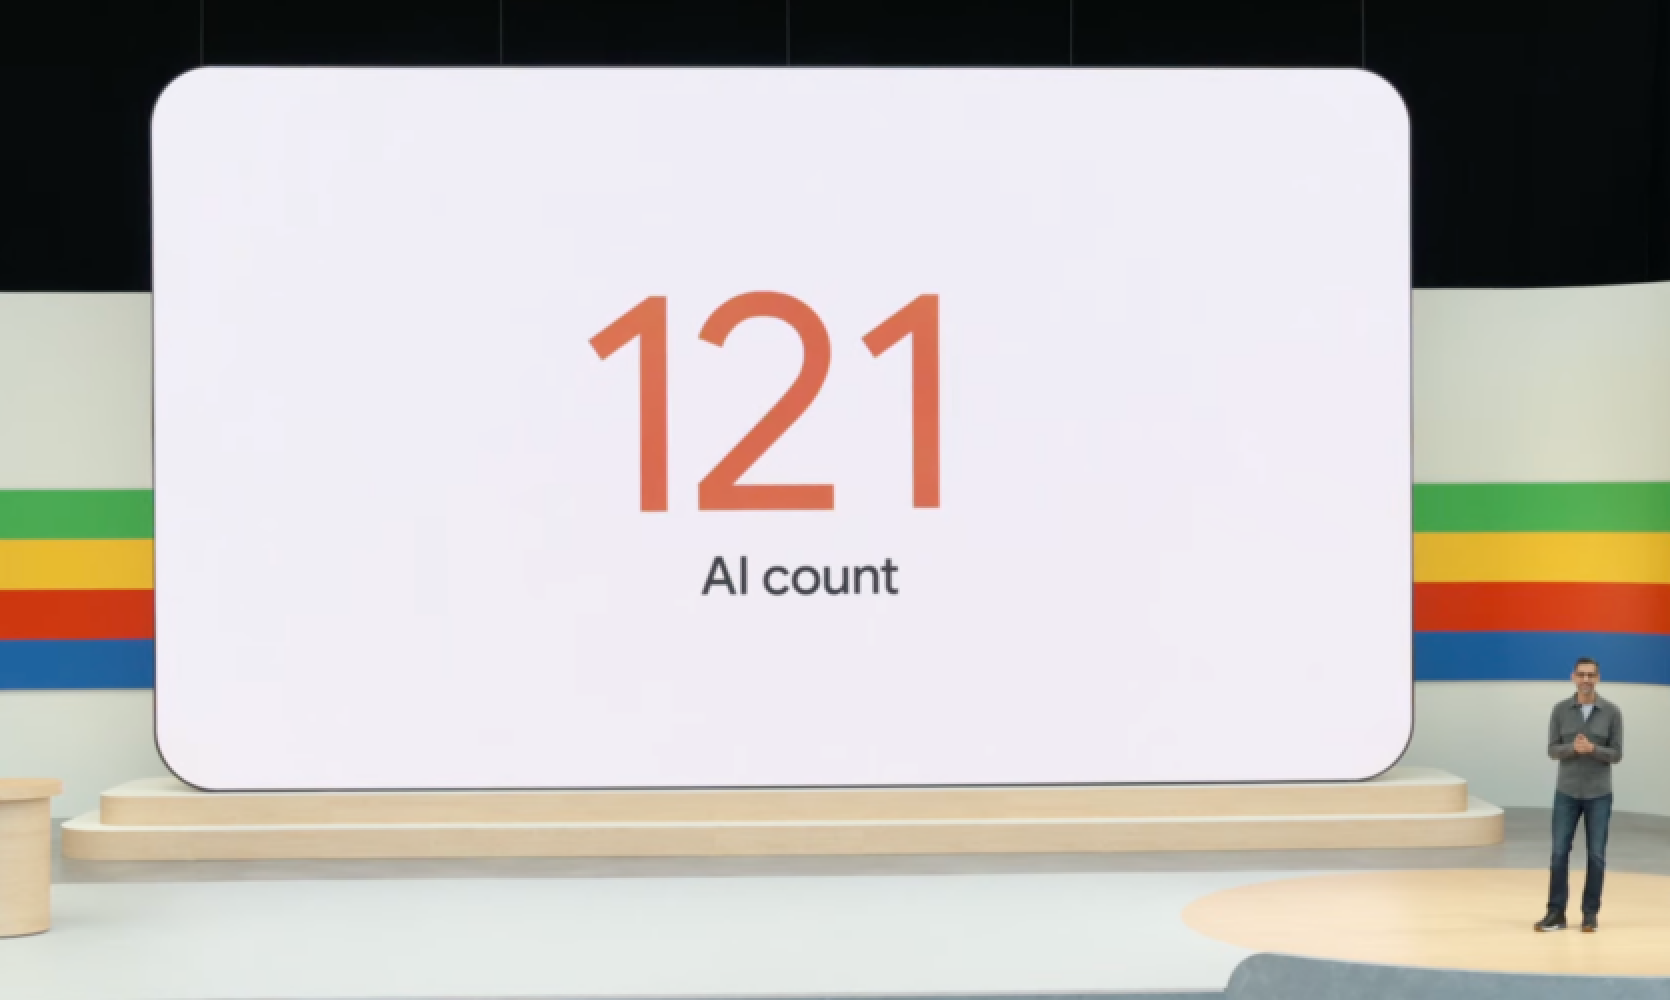 Google gandrīz divu stundu ilgajā I/O prezentācijā 121 reizi pieminēja vārdu "mākslīgais intelekts" un 1,5 reizes minūtē lietoja vārdu "Gemini".